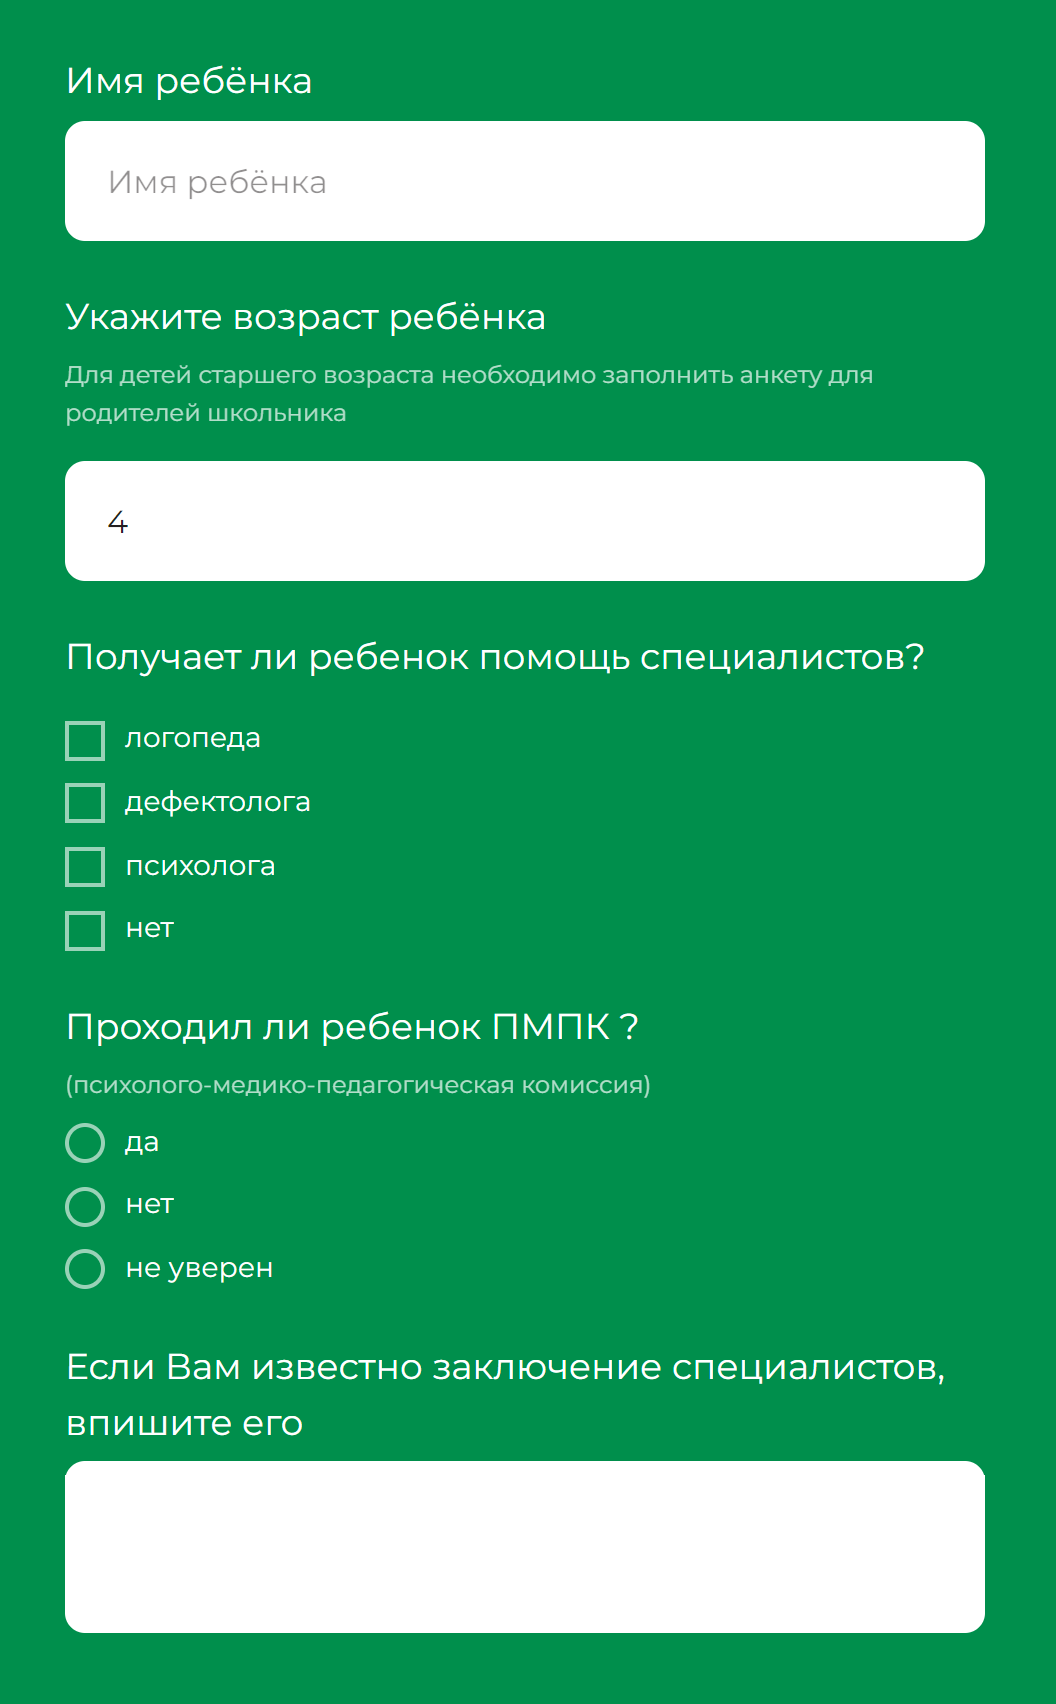 Такую анкету нужно заполнить перед онлайн-диагностикой. Источник: disleksiya.net